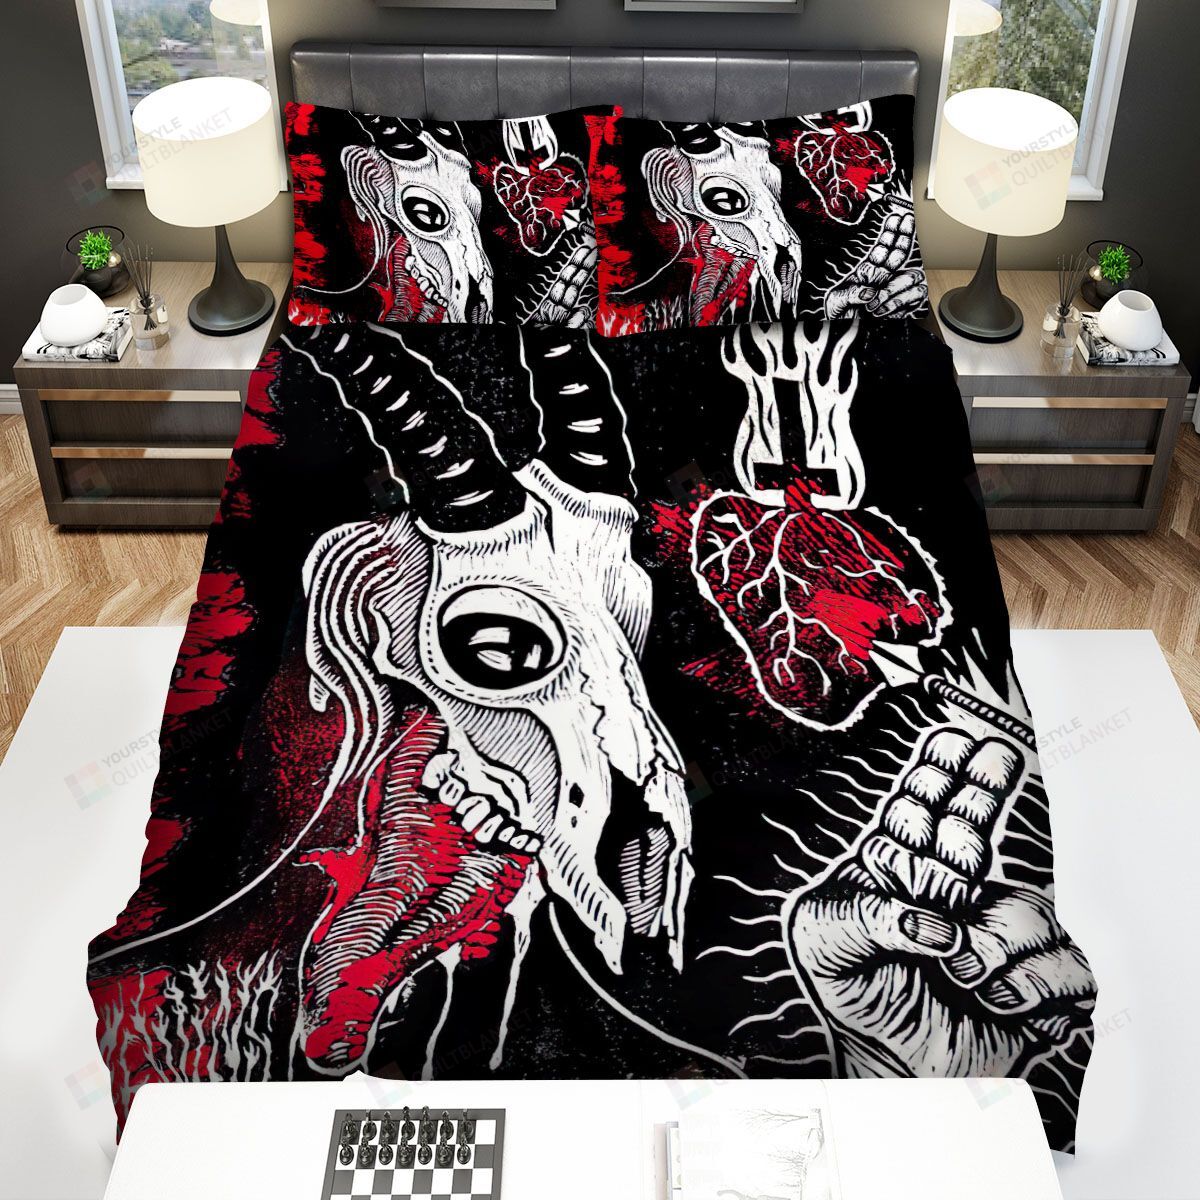 Melvins Goat Bed Sheets Spread Comforter Duvet Cover Bedding Sets